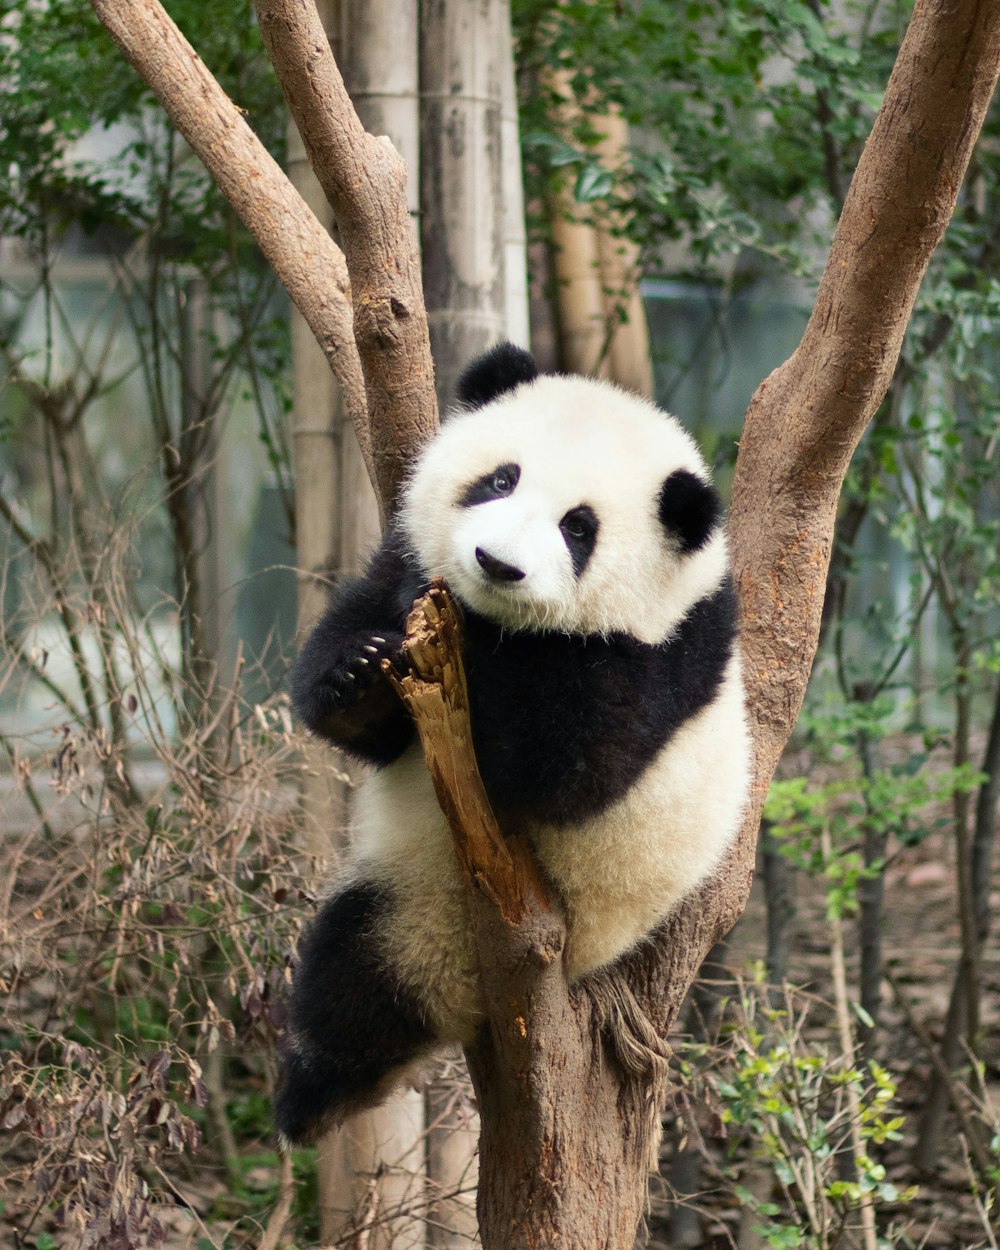 Panda bear on brown tree branch during daytime photo – Free ...